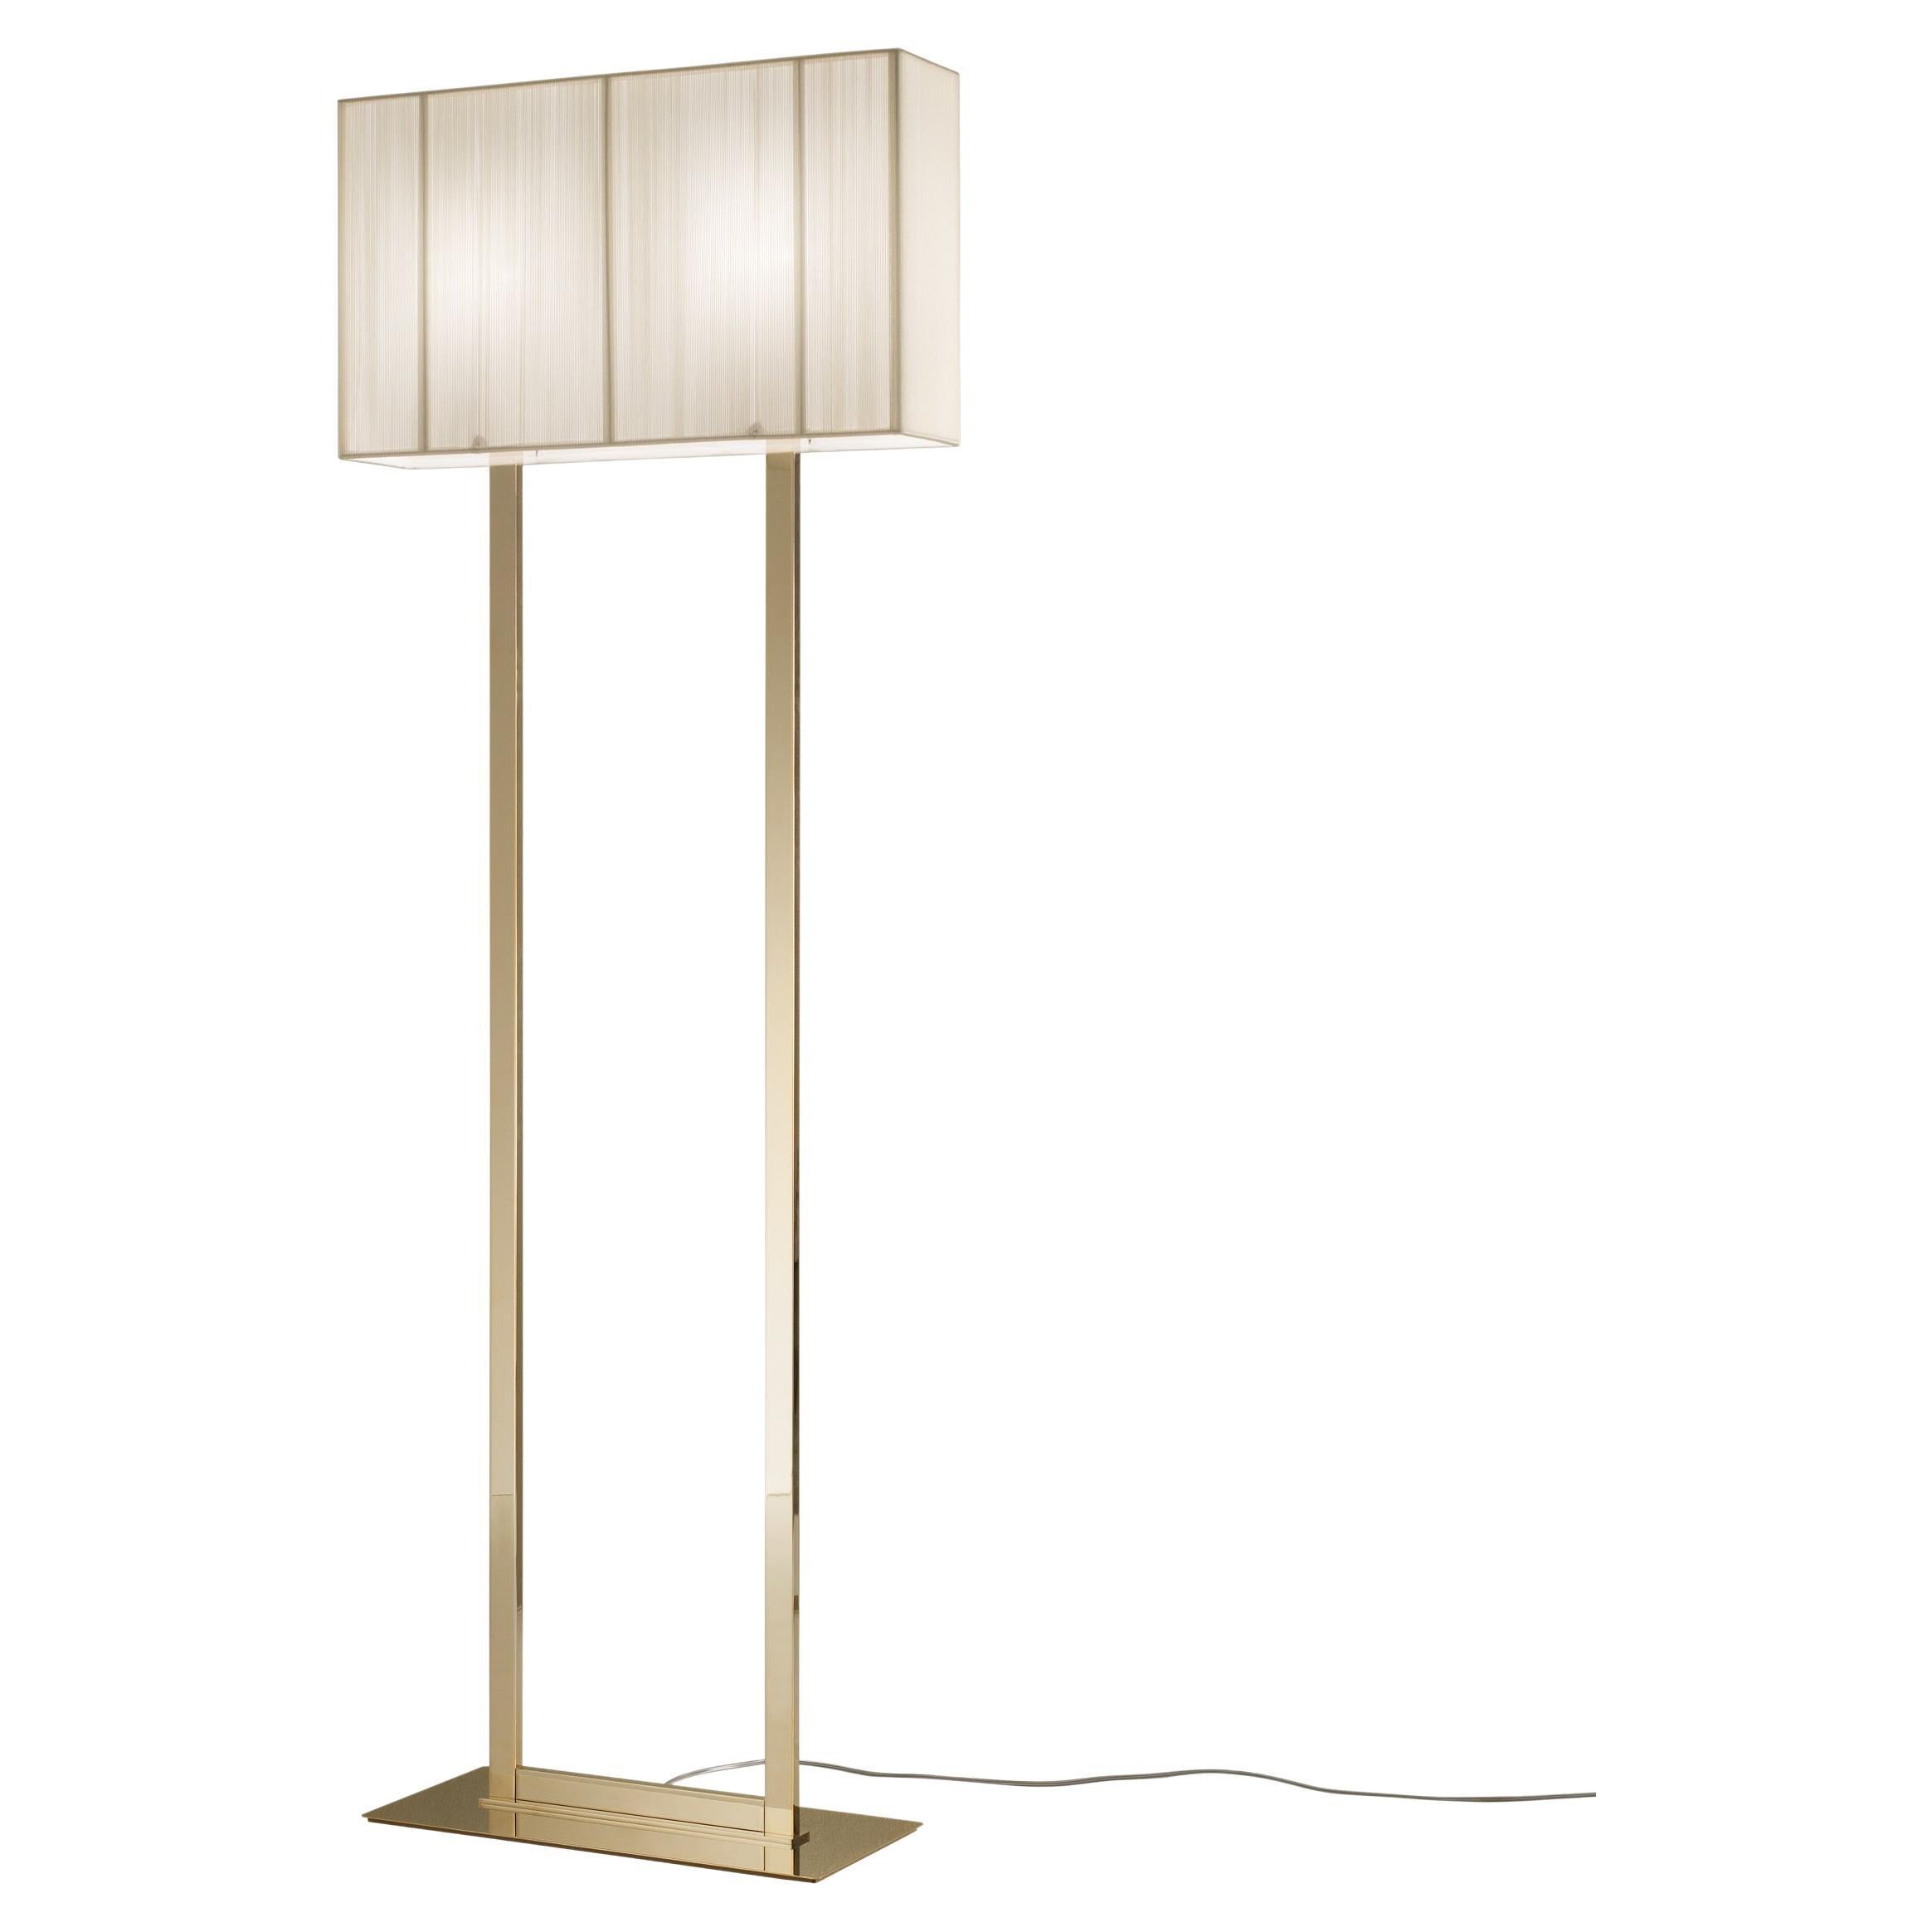 Axolight Clavius Medium Floor Lamp in White Lampshade and Gold Finish